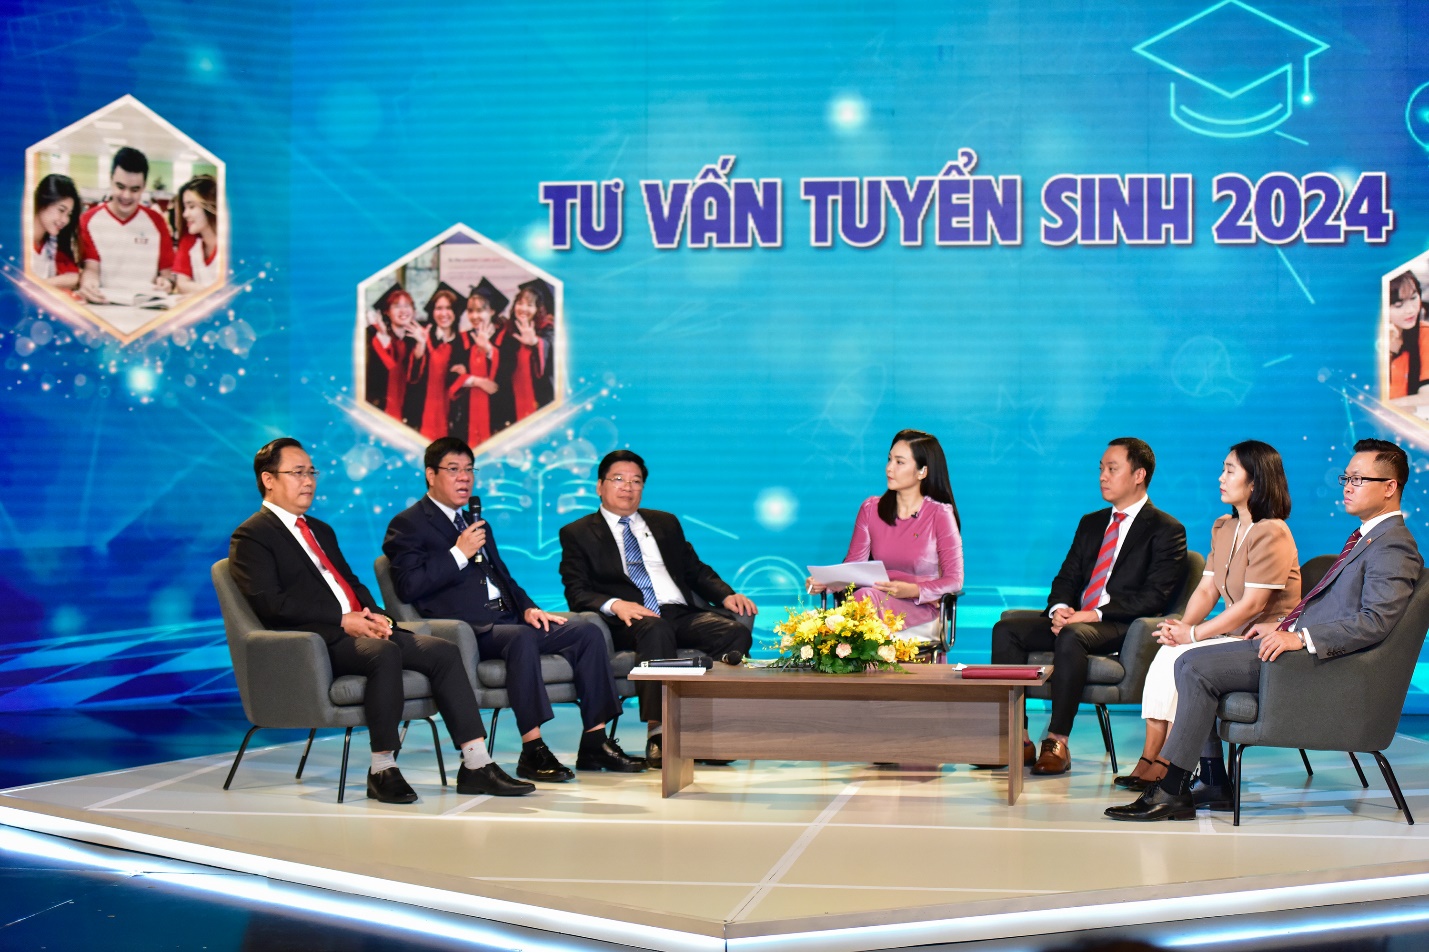 Nhiều vấn đề nóng trong chương trình truyền hình trực tiếp tư vấn tuyển sinh, hướng nghiệp 2024 trên VTV2- Ảnh 1.